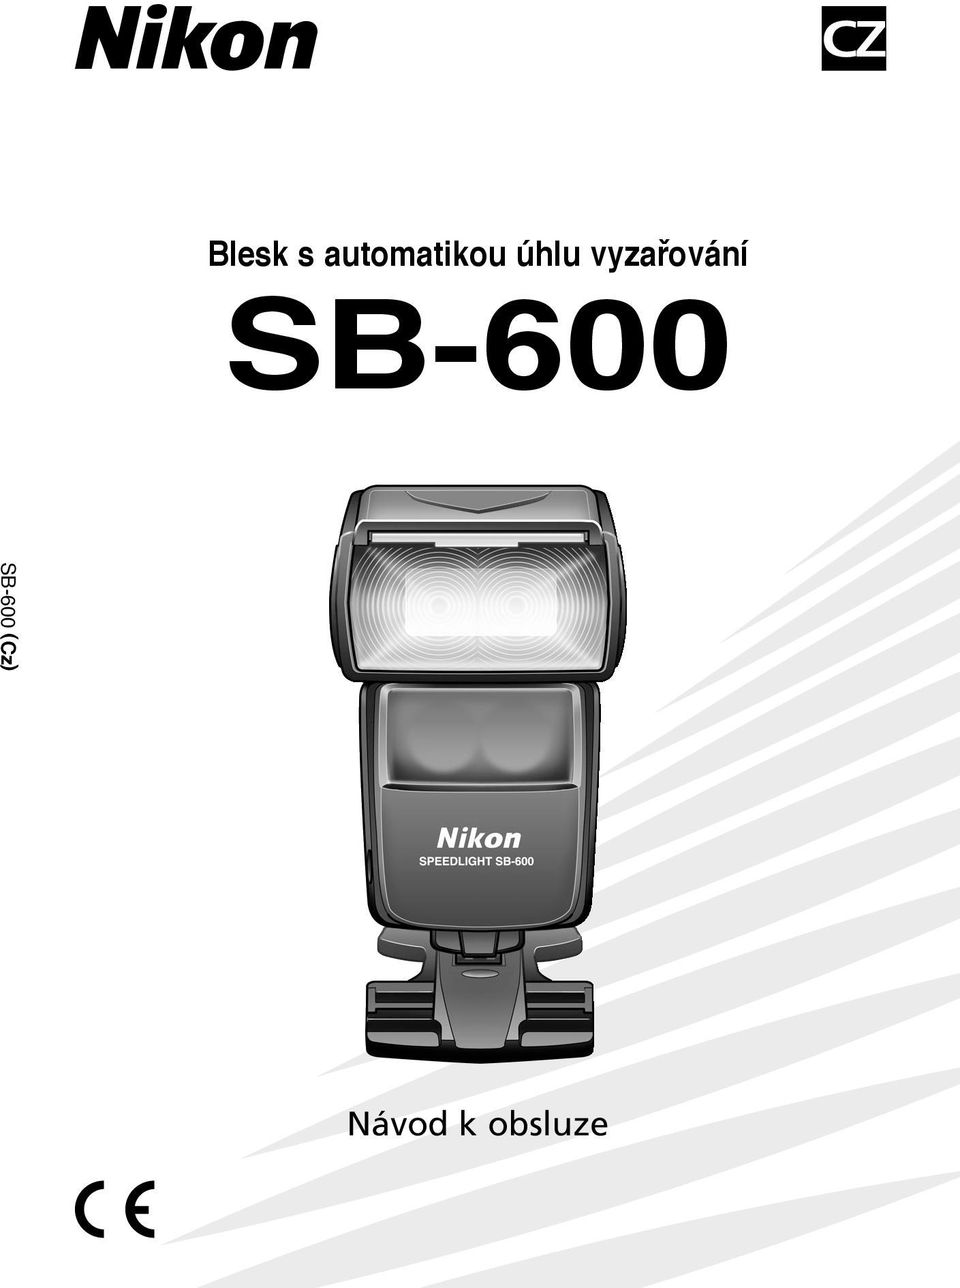 vyzafiování SB-600